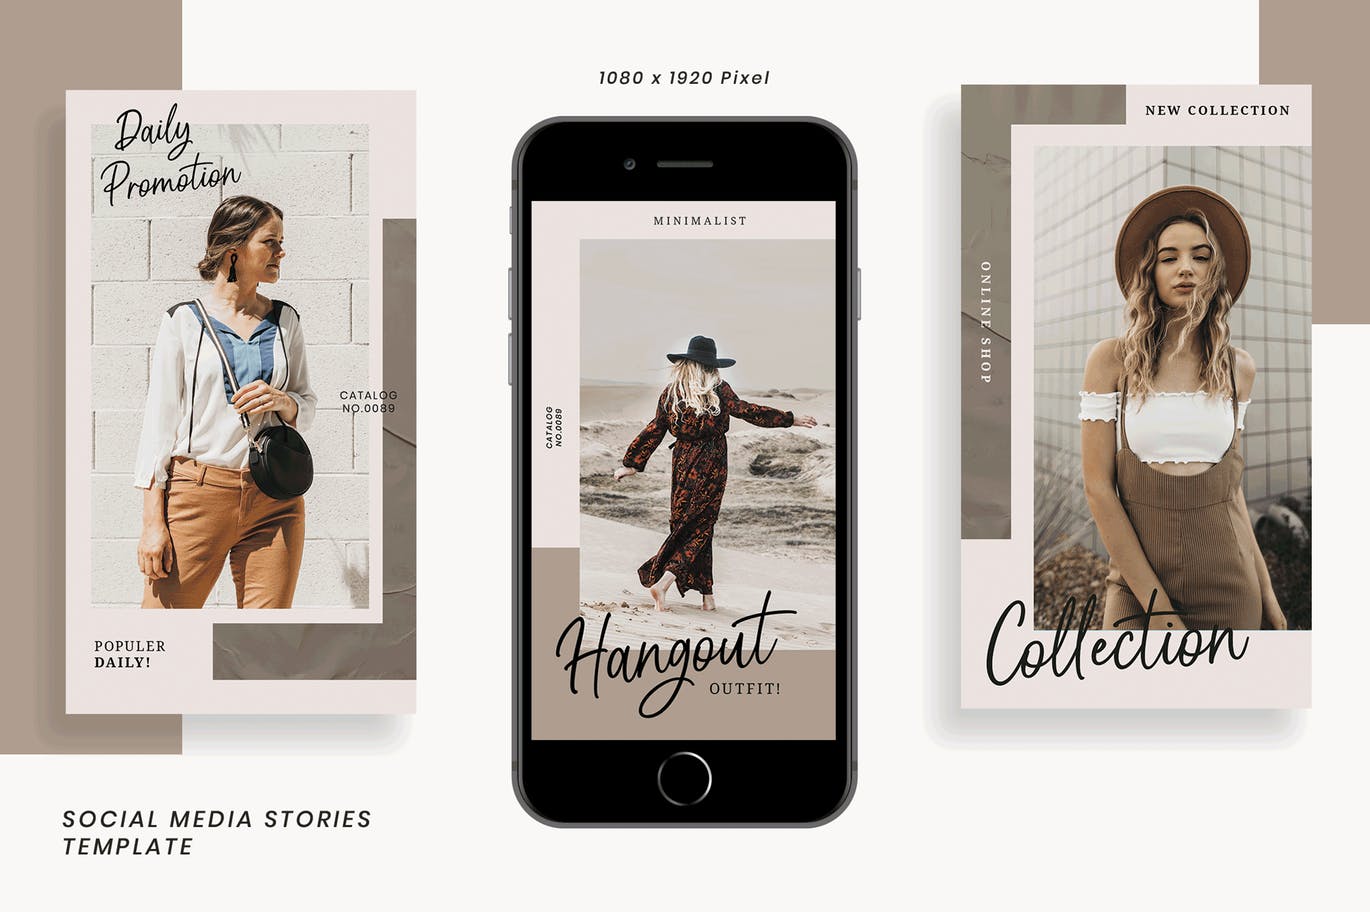 简约风格Instagram社交媒体设计广告图设计模板第一素材精选 Herliana Instagram Story Template插图(1)